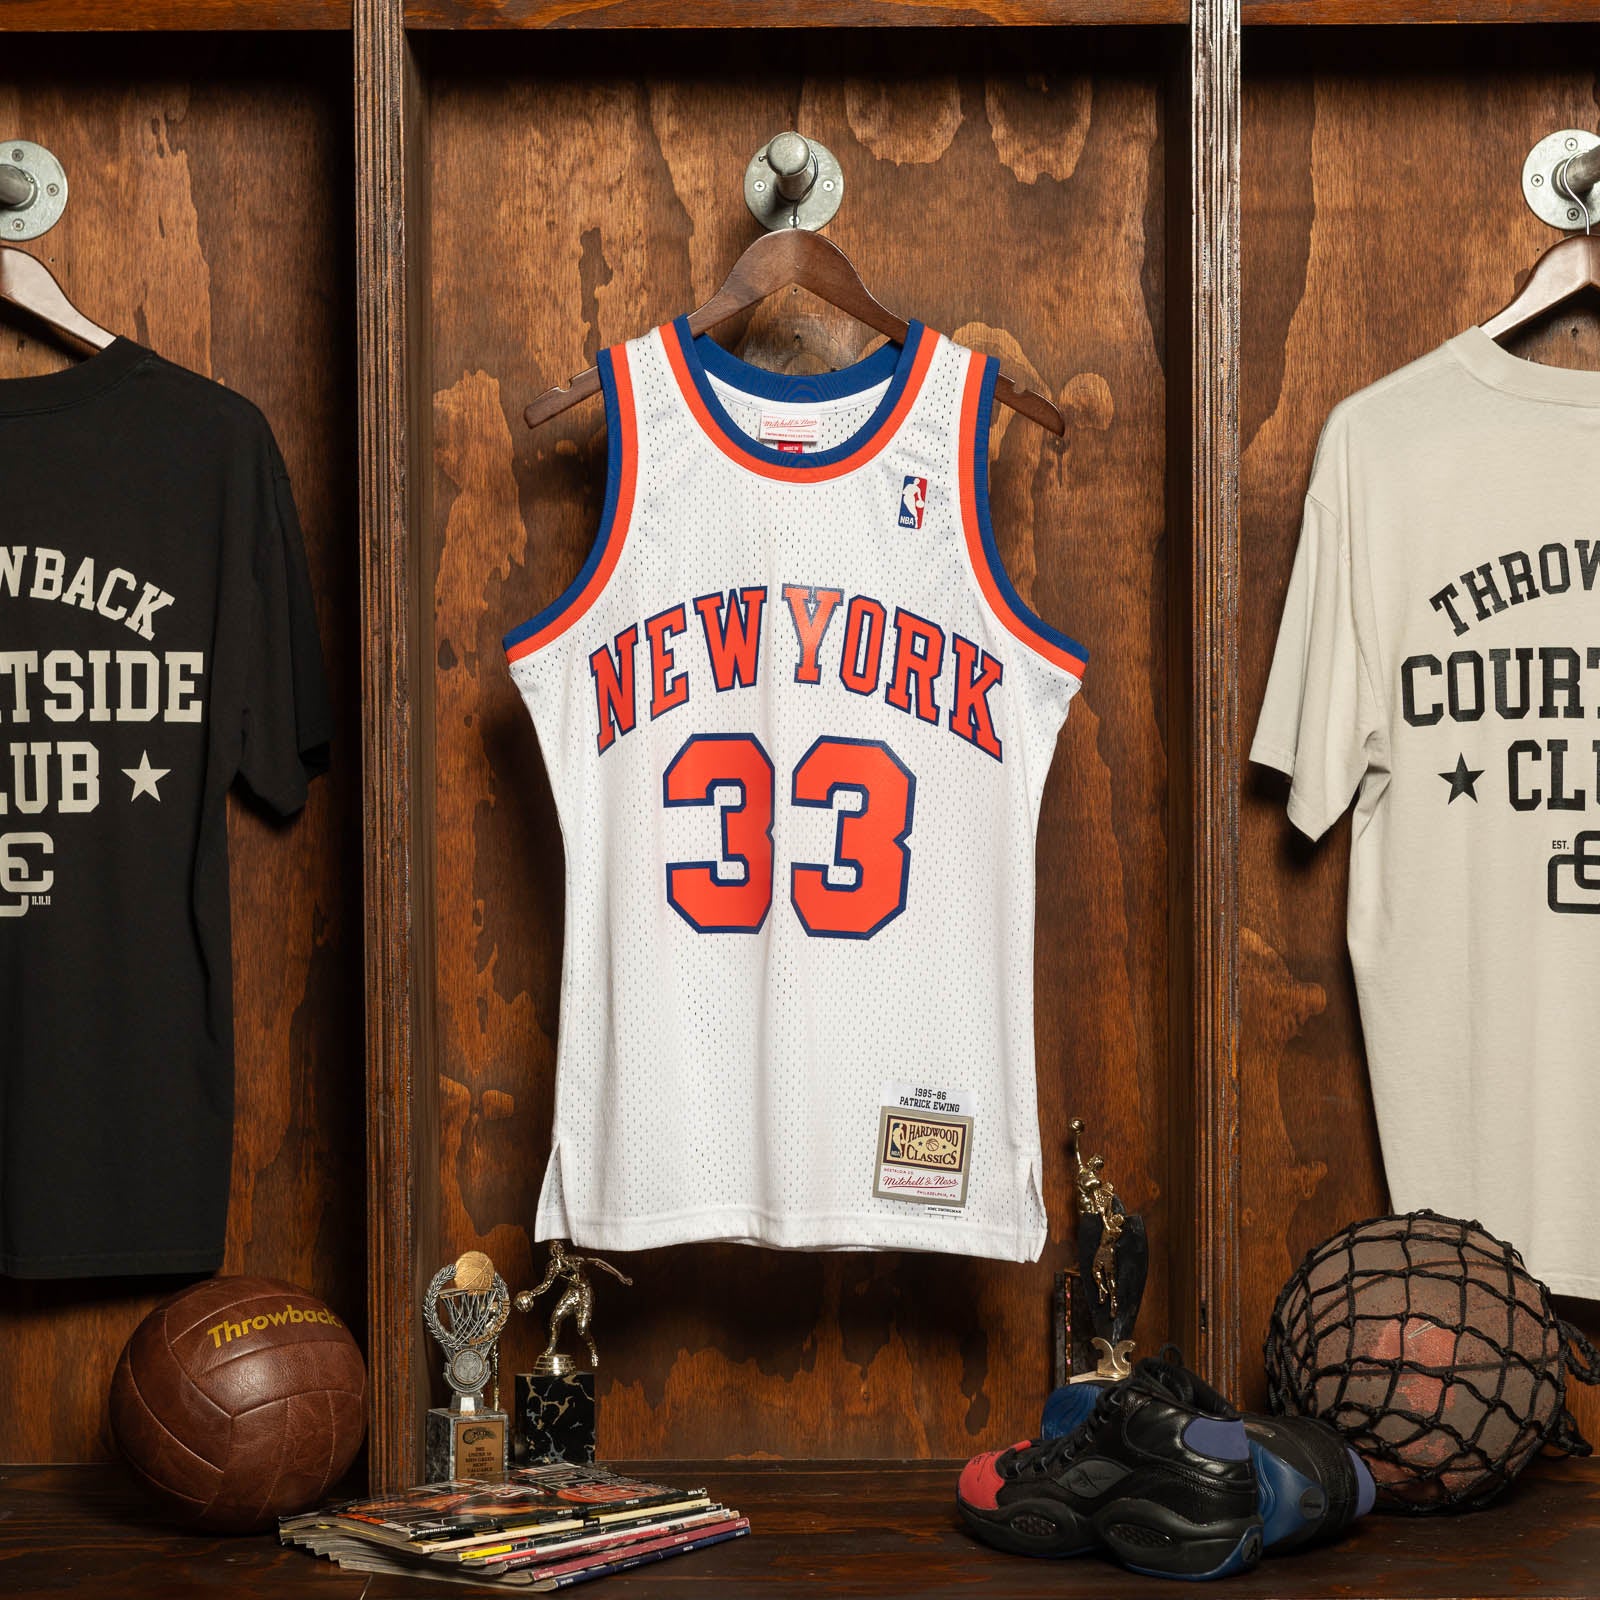 Official New York Knicks Merchandise